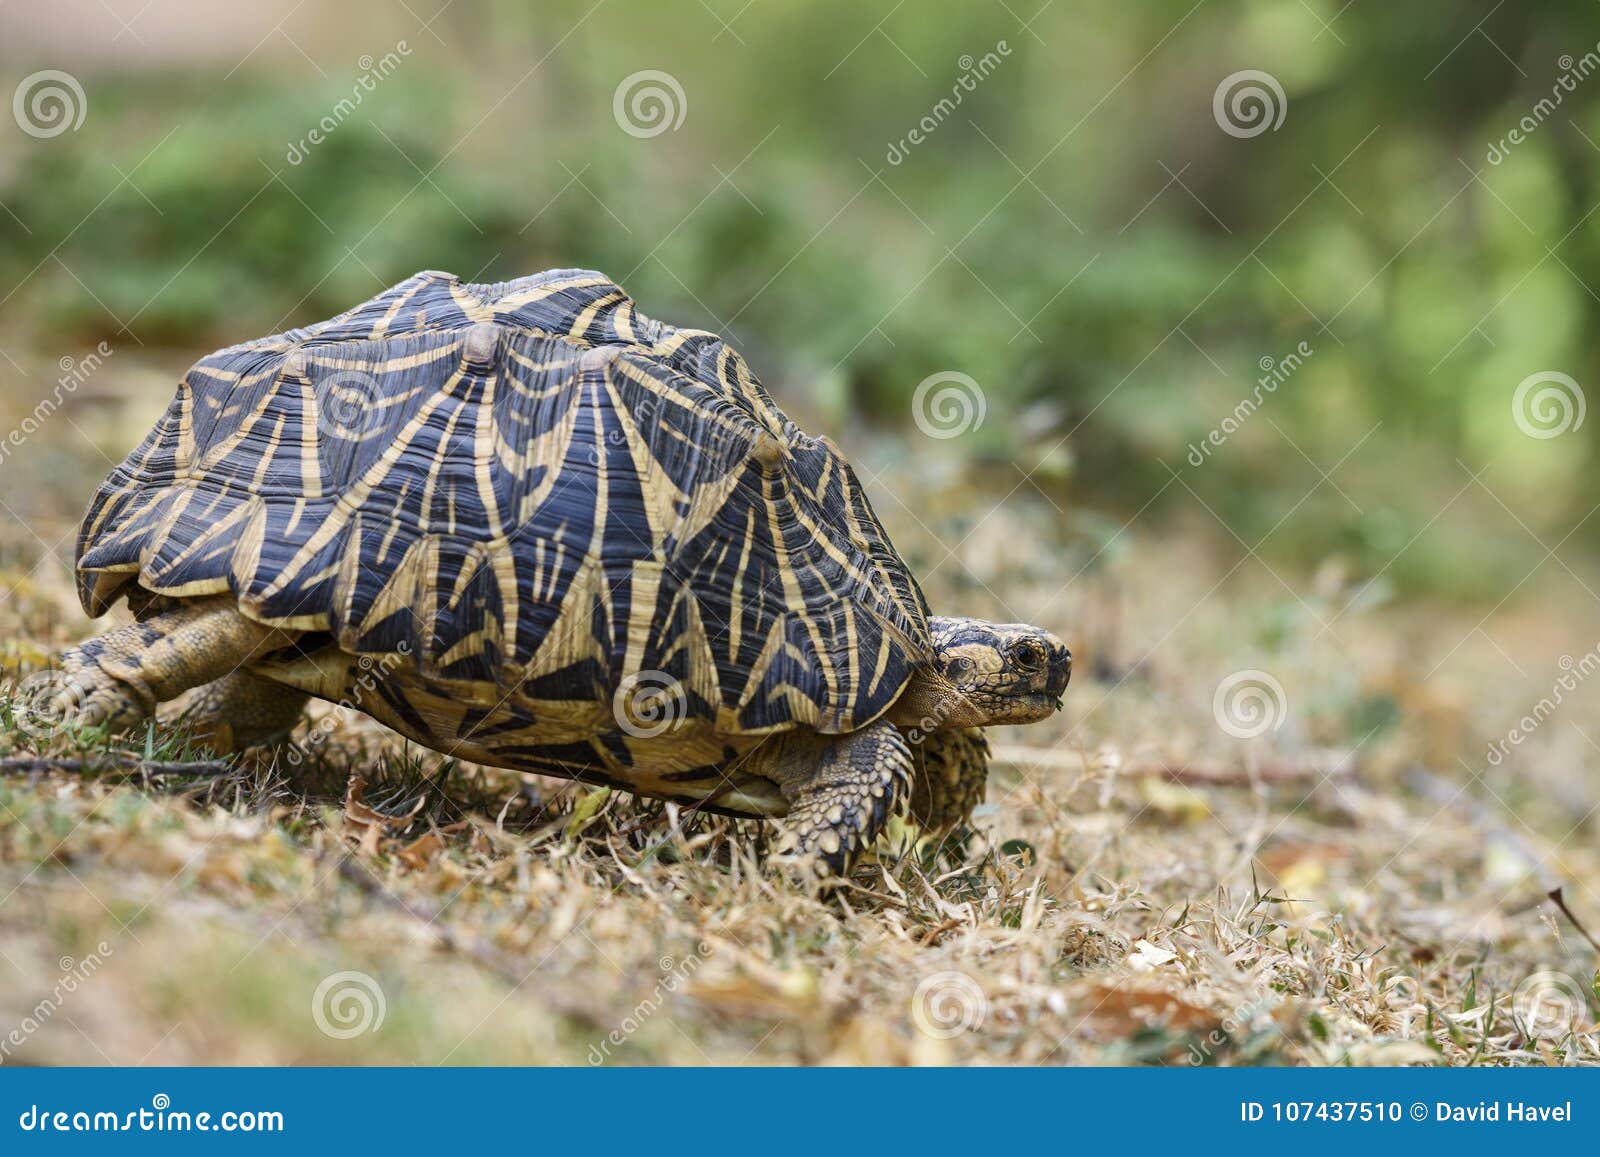 印地安星草龟 陡壁峡口蛇头草属elegans 斯里兰卡库存照片 图片包括有陡壁峡口蛇头草属elegans 斯里兰卡 印地安星草龟